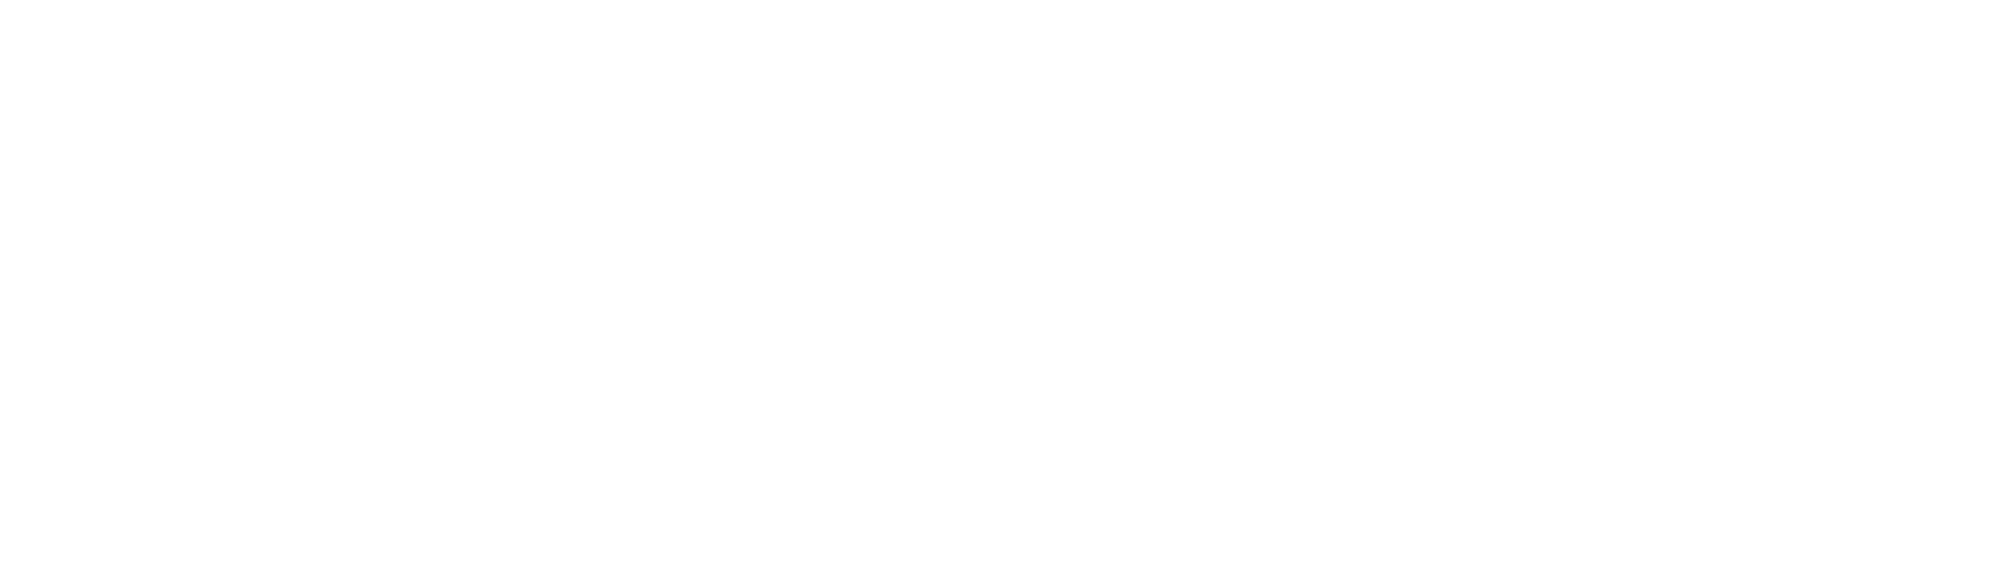 Dunsborough Equine Lodge